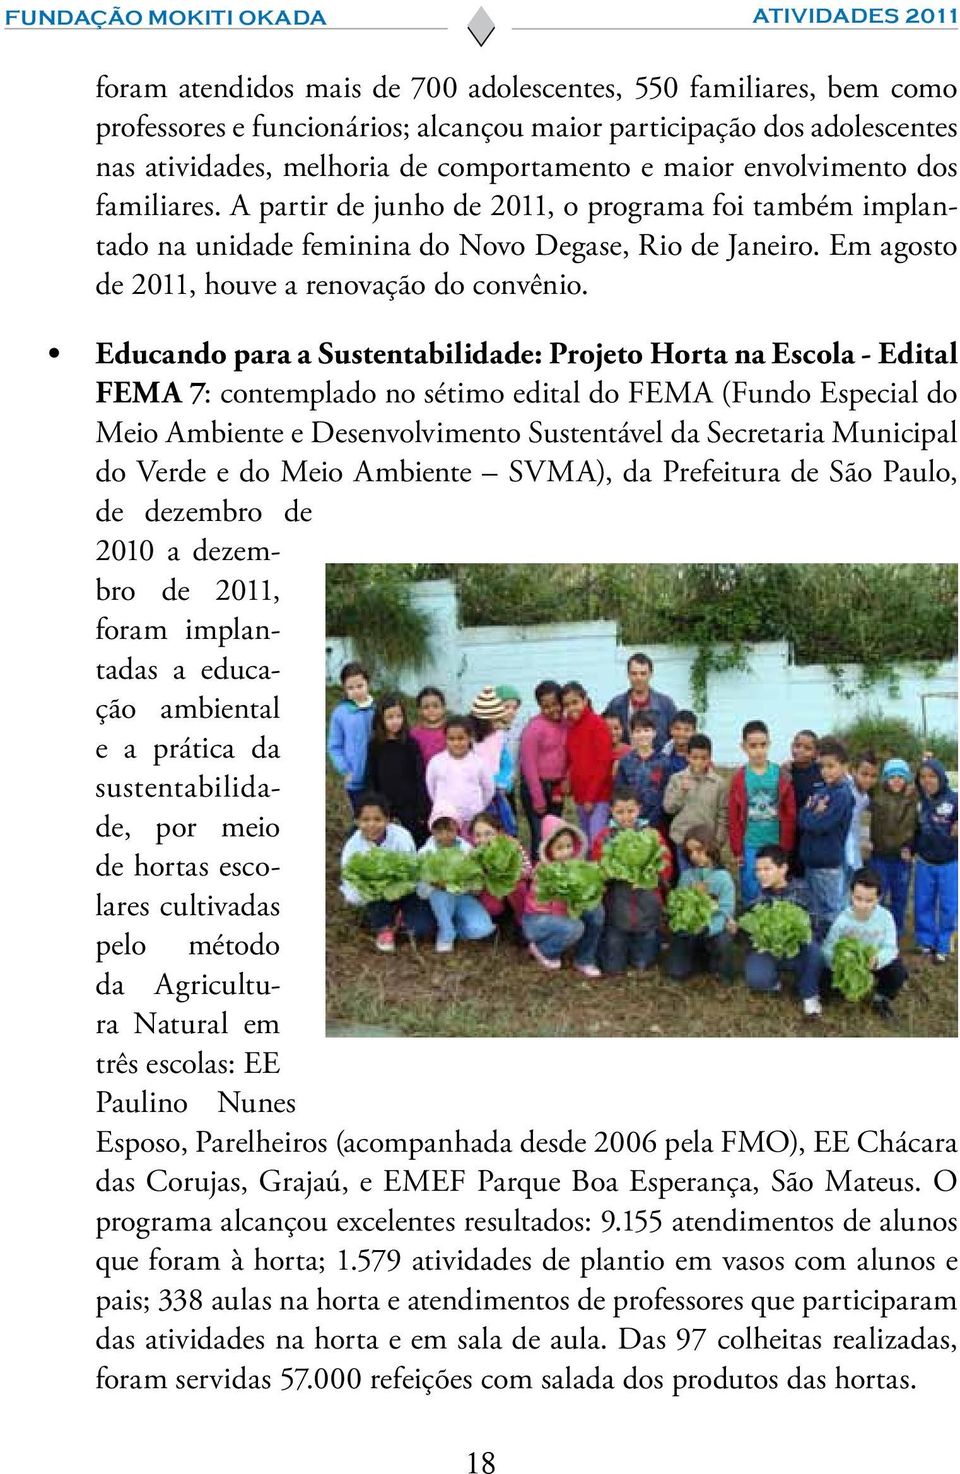 Educando para a Sustentabilidade: Projeto Horta na Escola - Edital FEMA 7: contemplado no sétimo edital do FEMA (Fundo Especial do Meio Ambiente e Desenvolvimento Sustentável da Secretaria Municipal